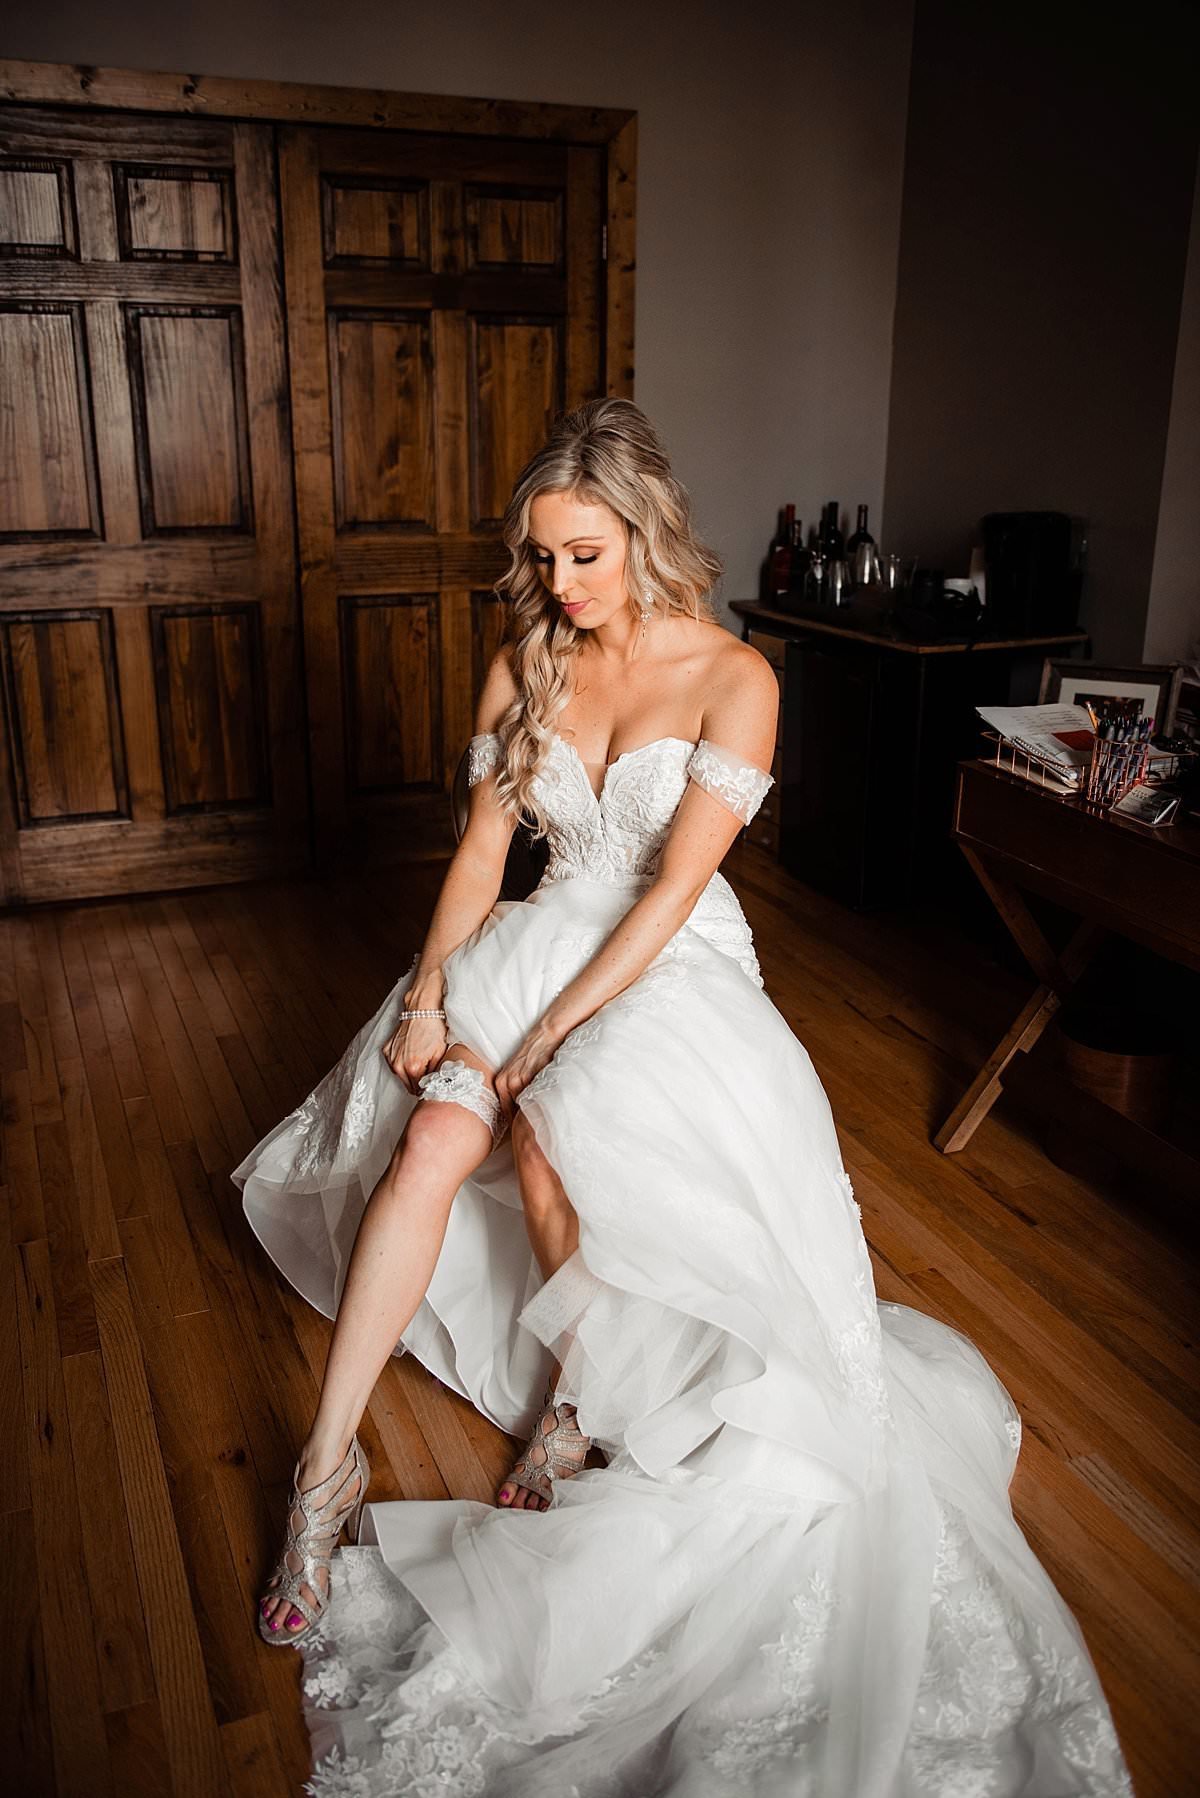 Bride sitting in bridal room pulling her garter up her leg